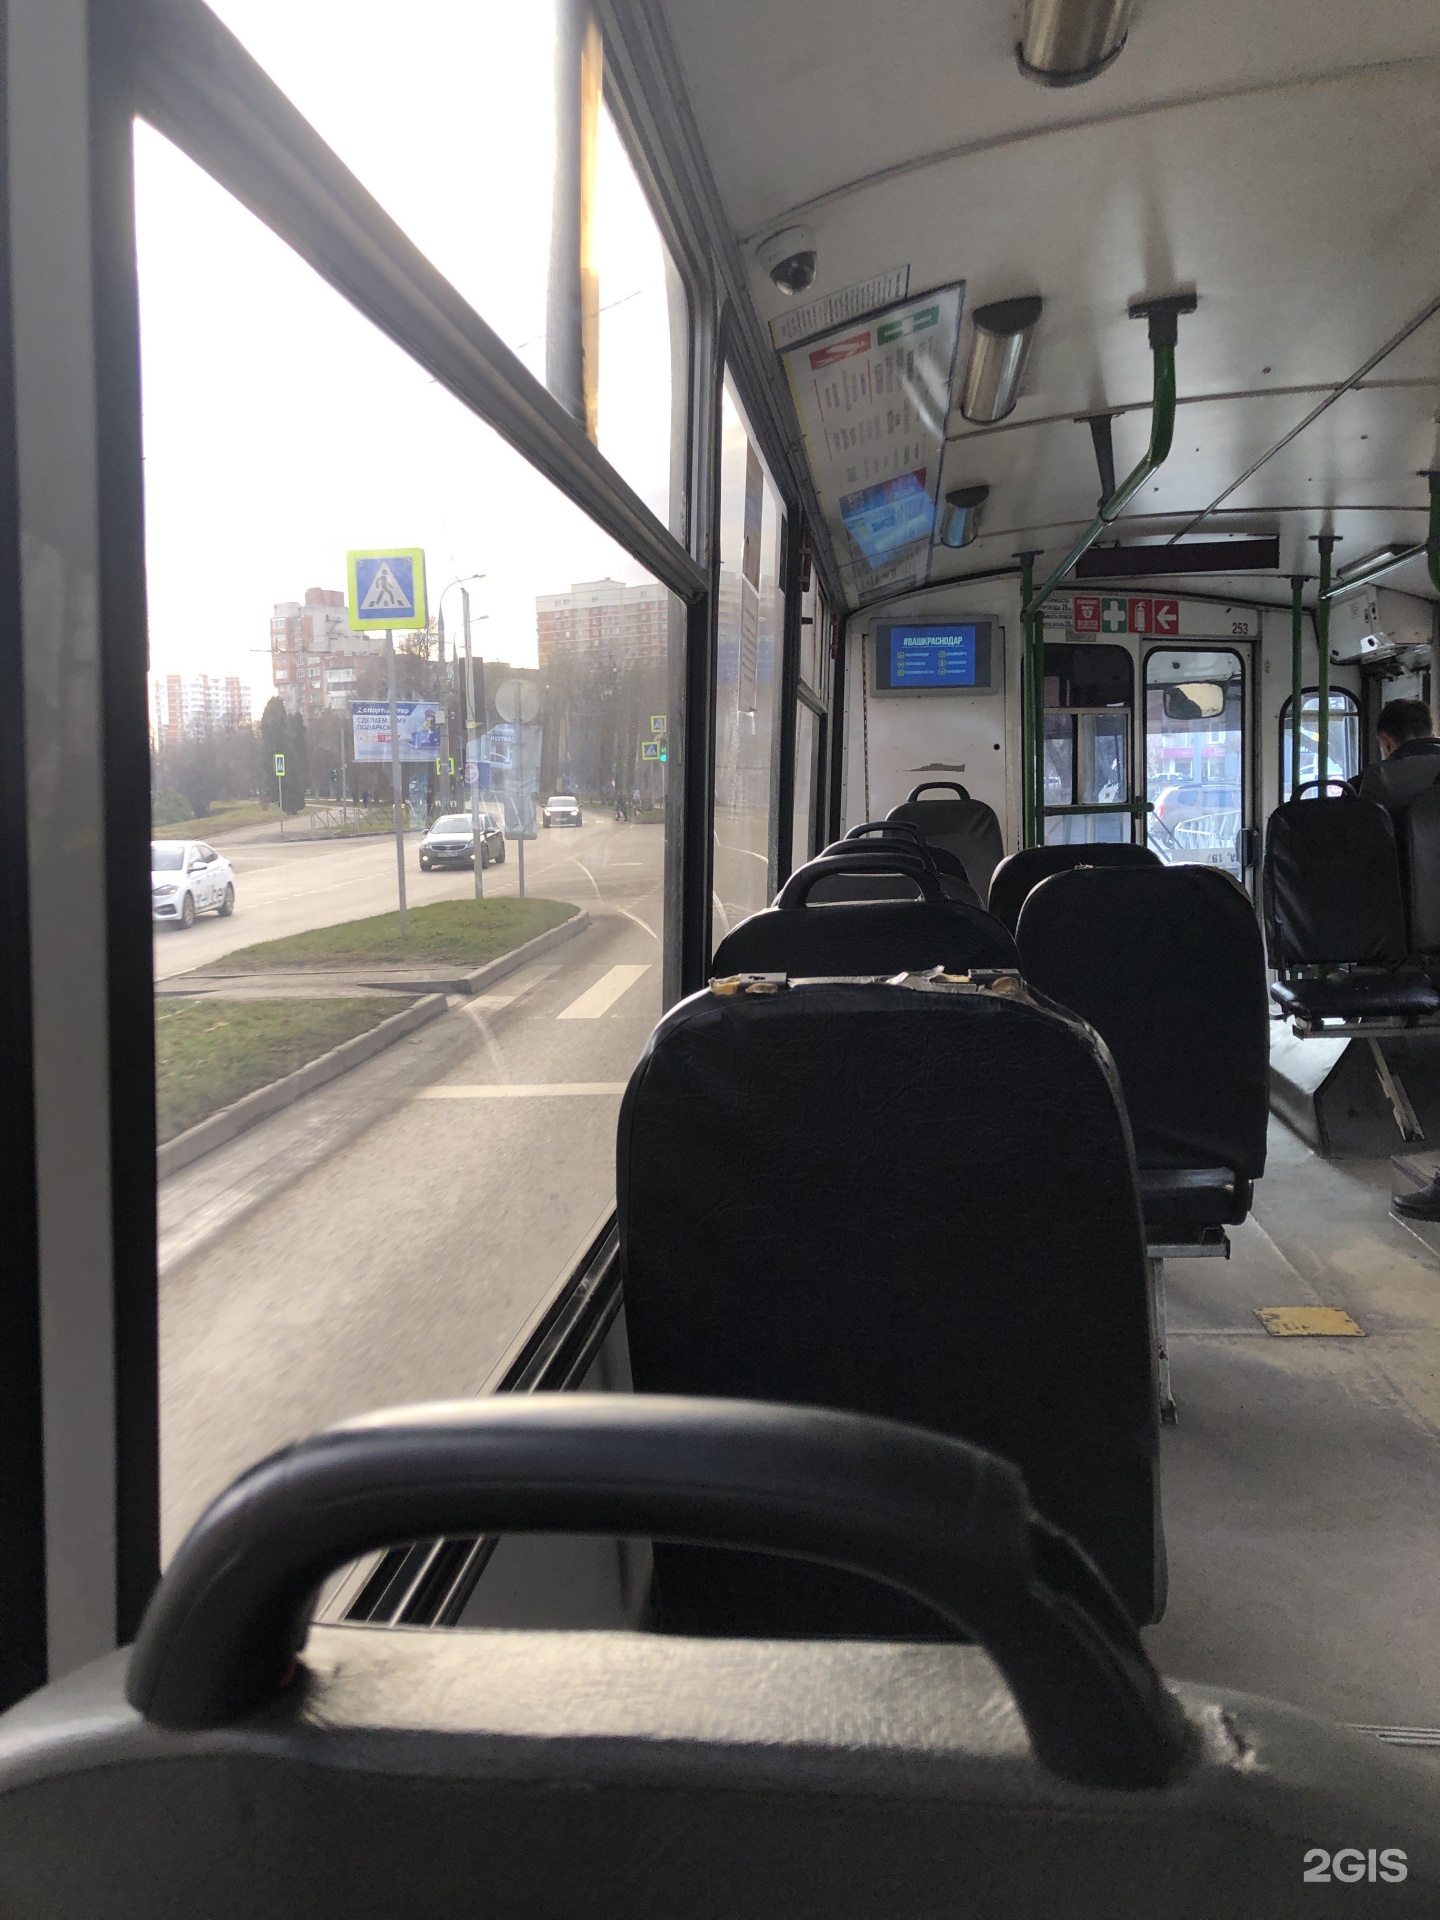 Движение 14 троллейбуса